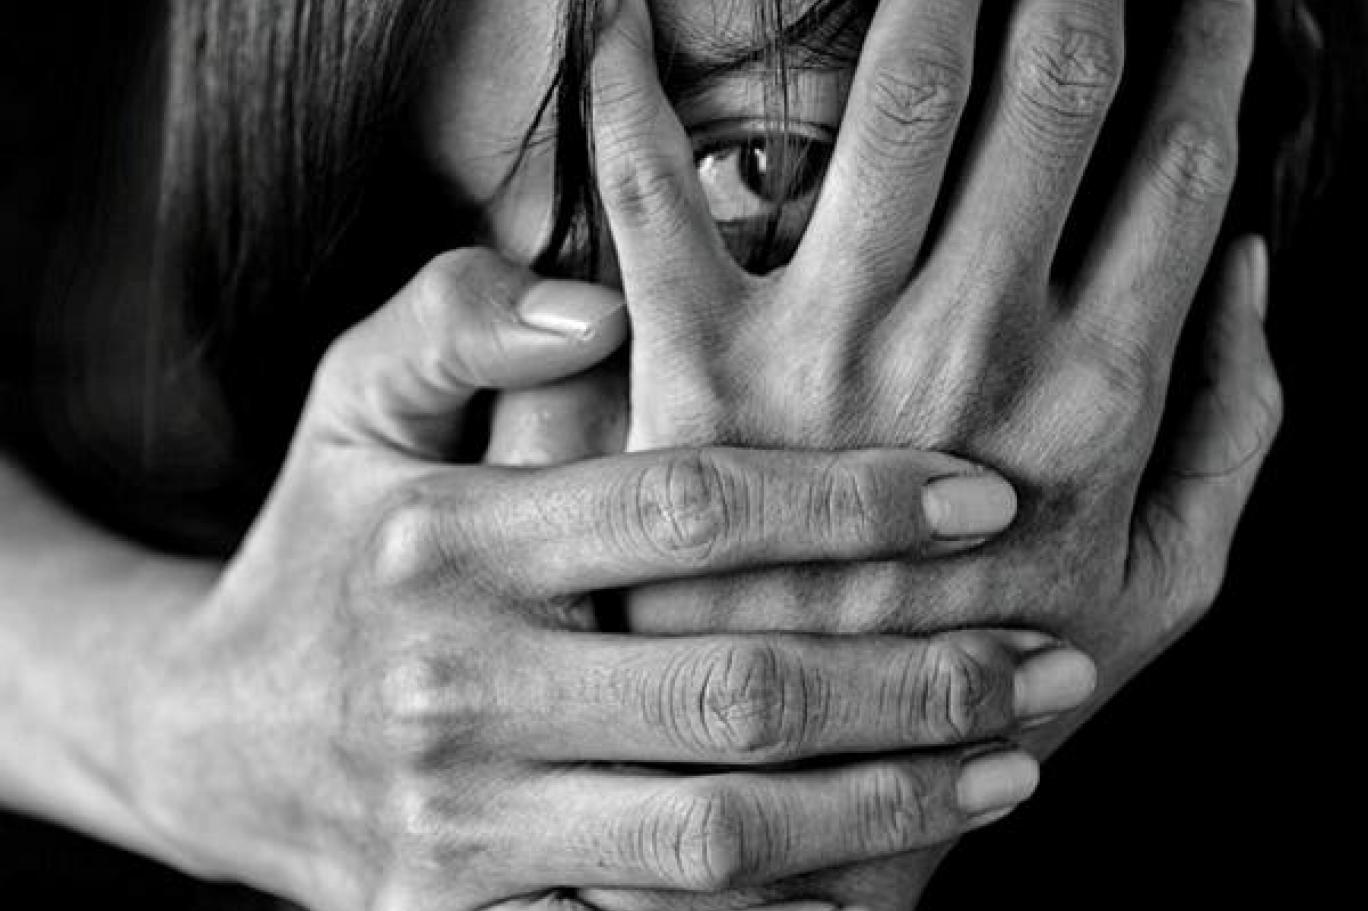 العنف الأسري صرخات مكتومة خلف أبواب كورونا | اندبندنت عربية